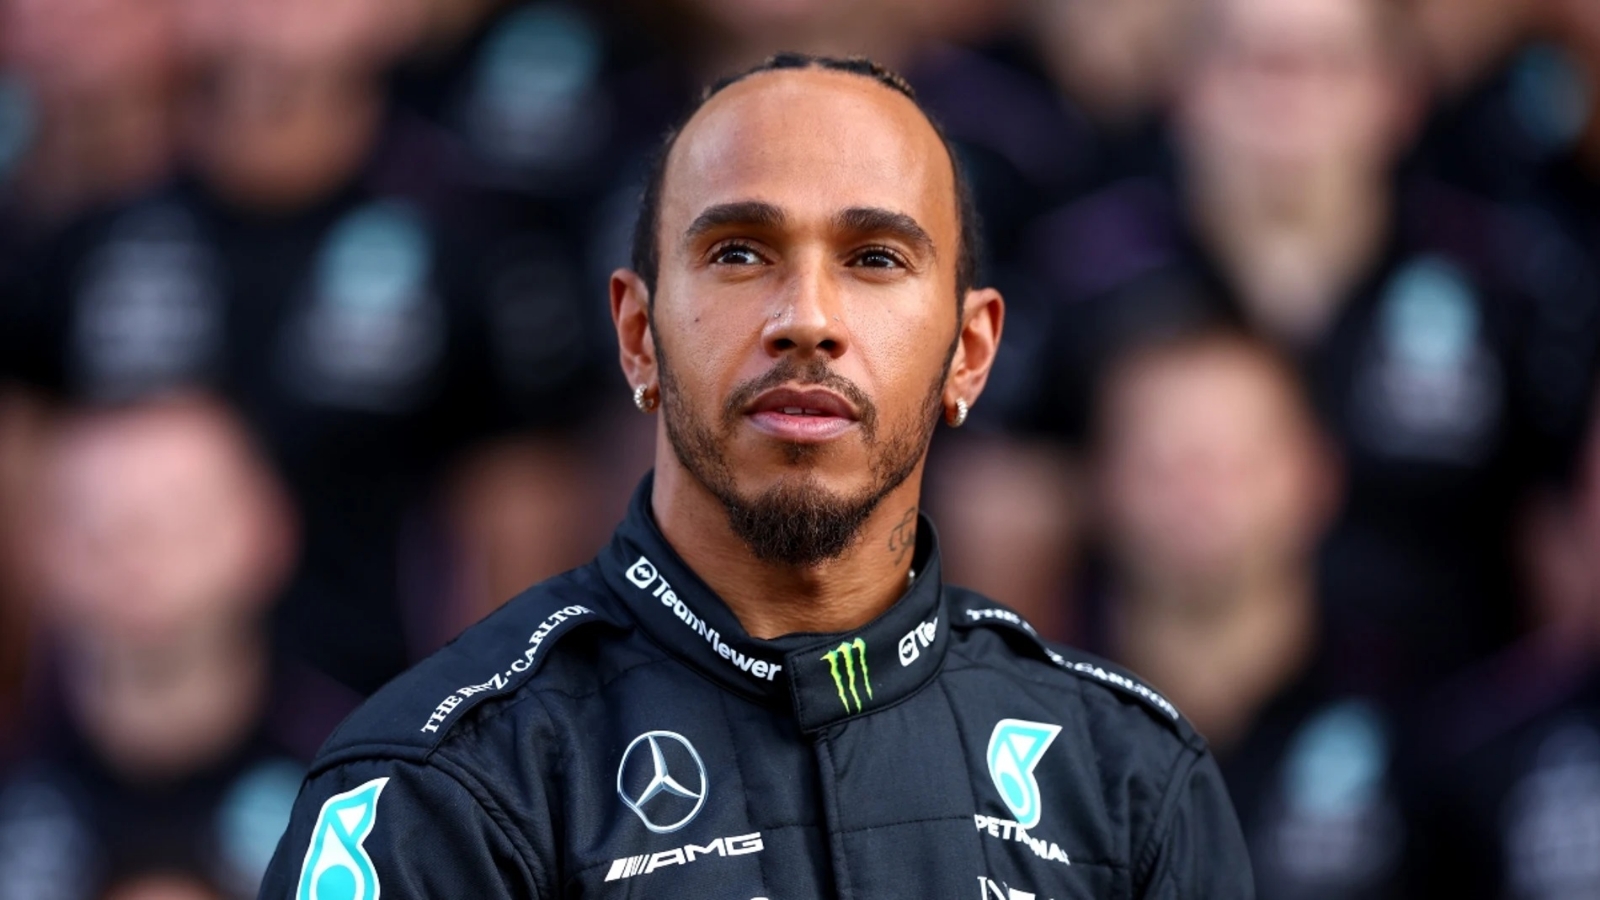 Lewis Hamilton abandona el equipo Mercedes de la F1